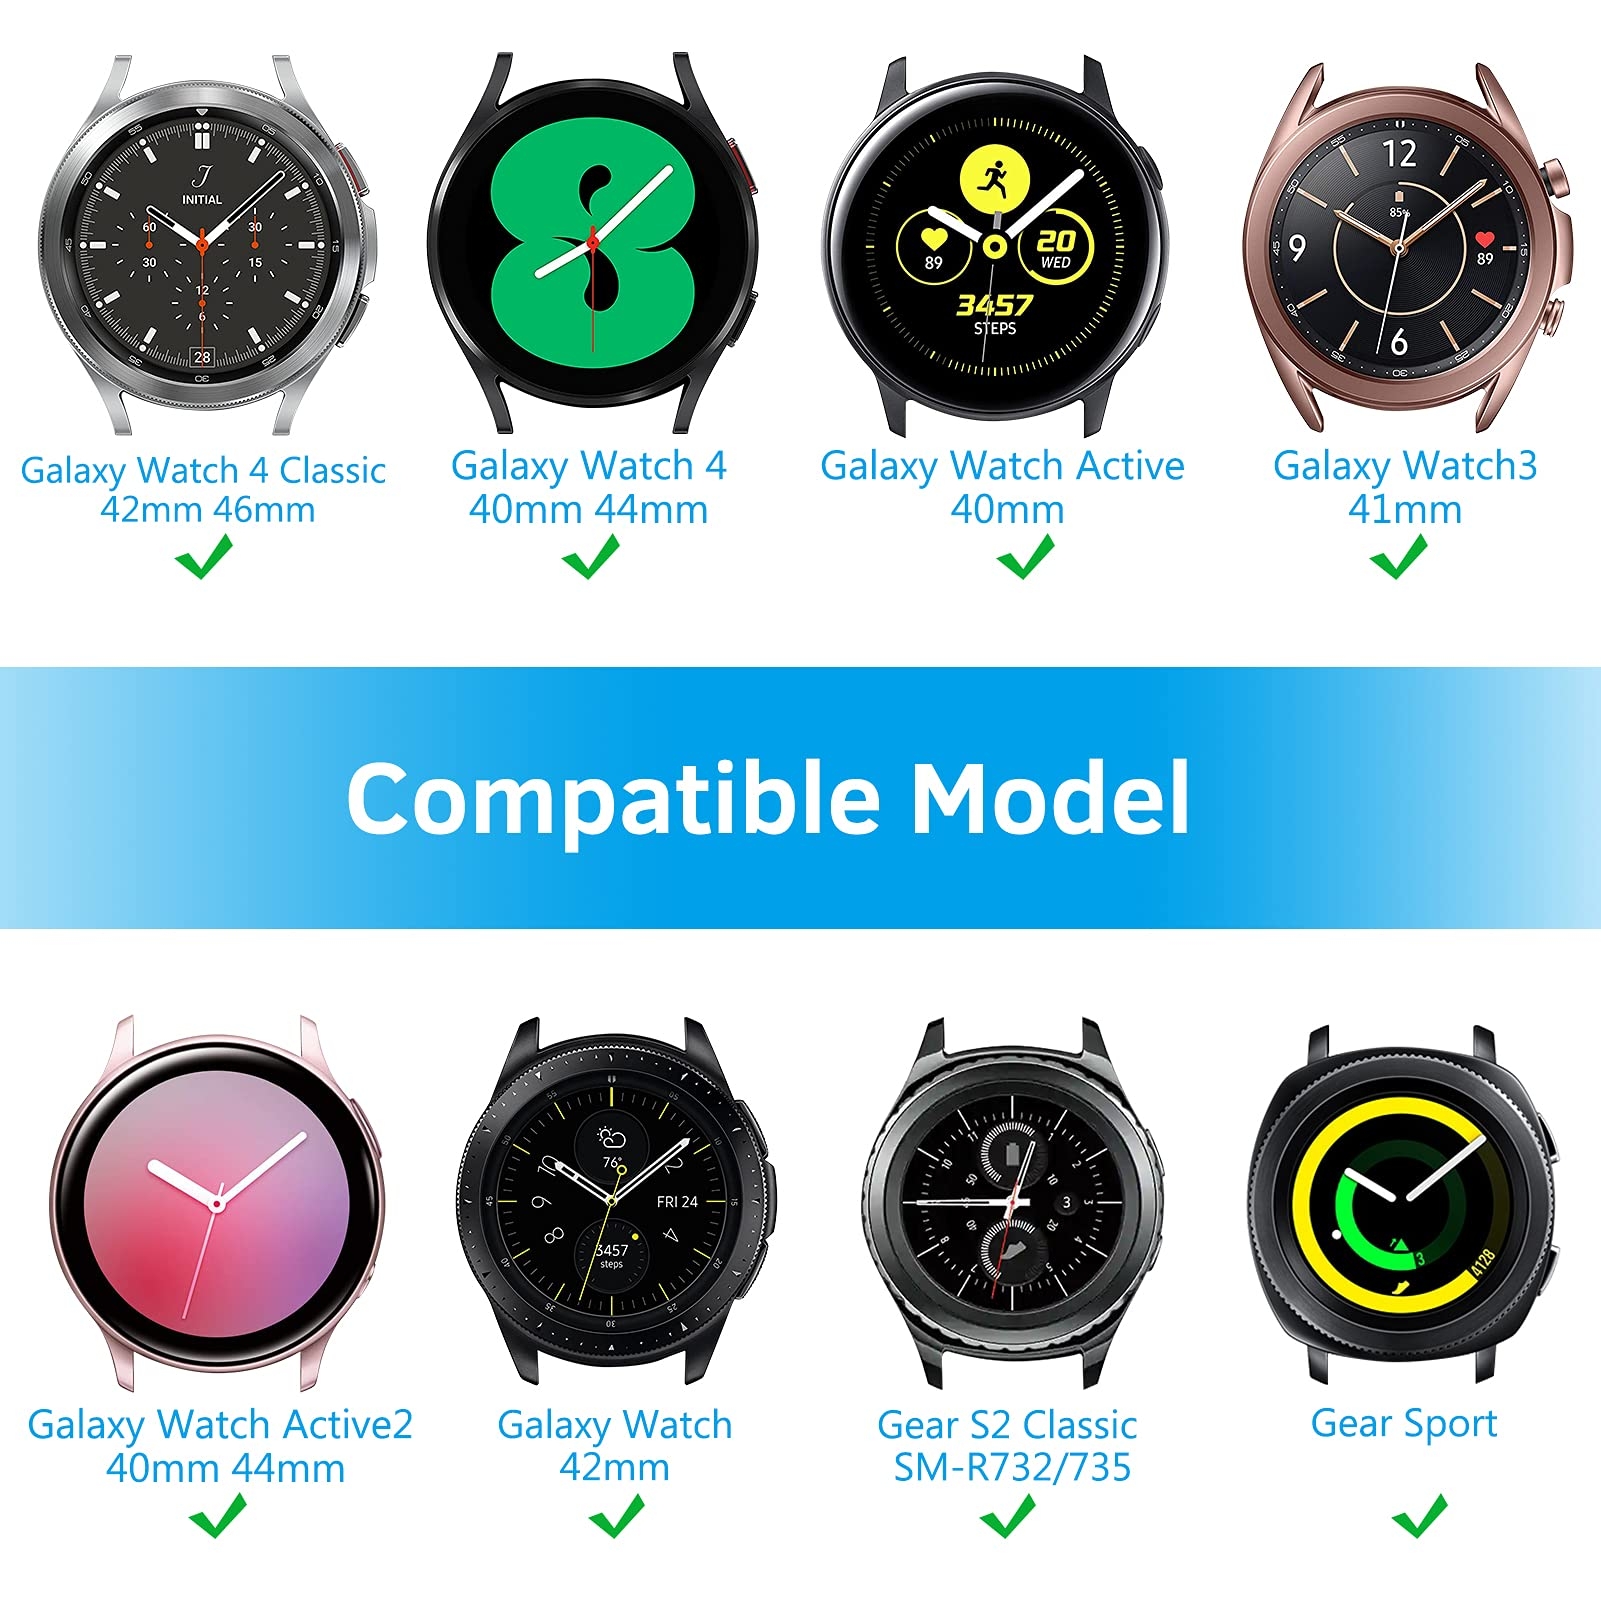 سوار ساعة سامسونج (حزام ساعة) سيليكون - أزرق O Ozone Silicone Strap for Samsung Galaxy Watch